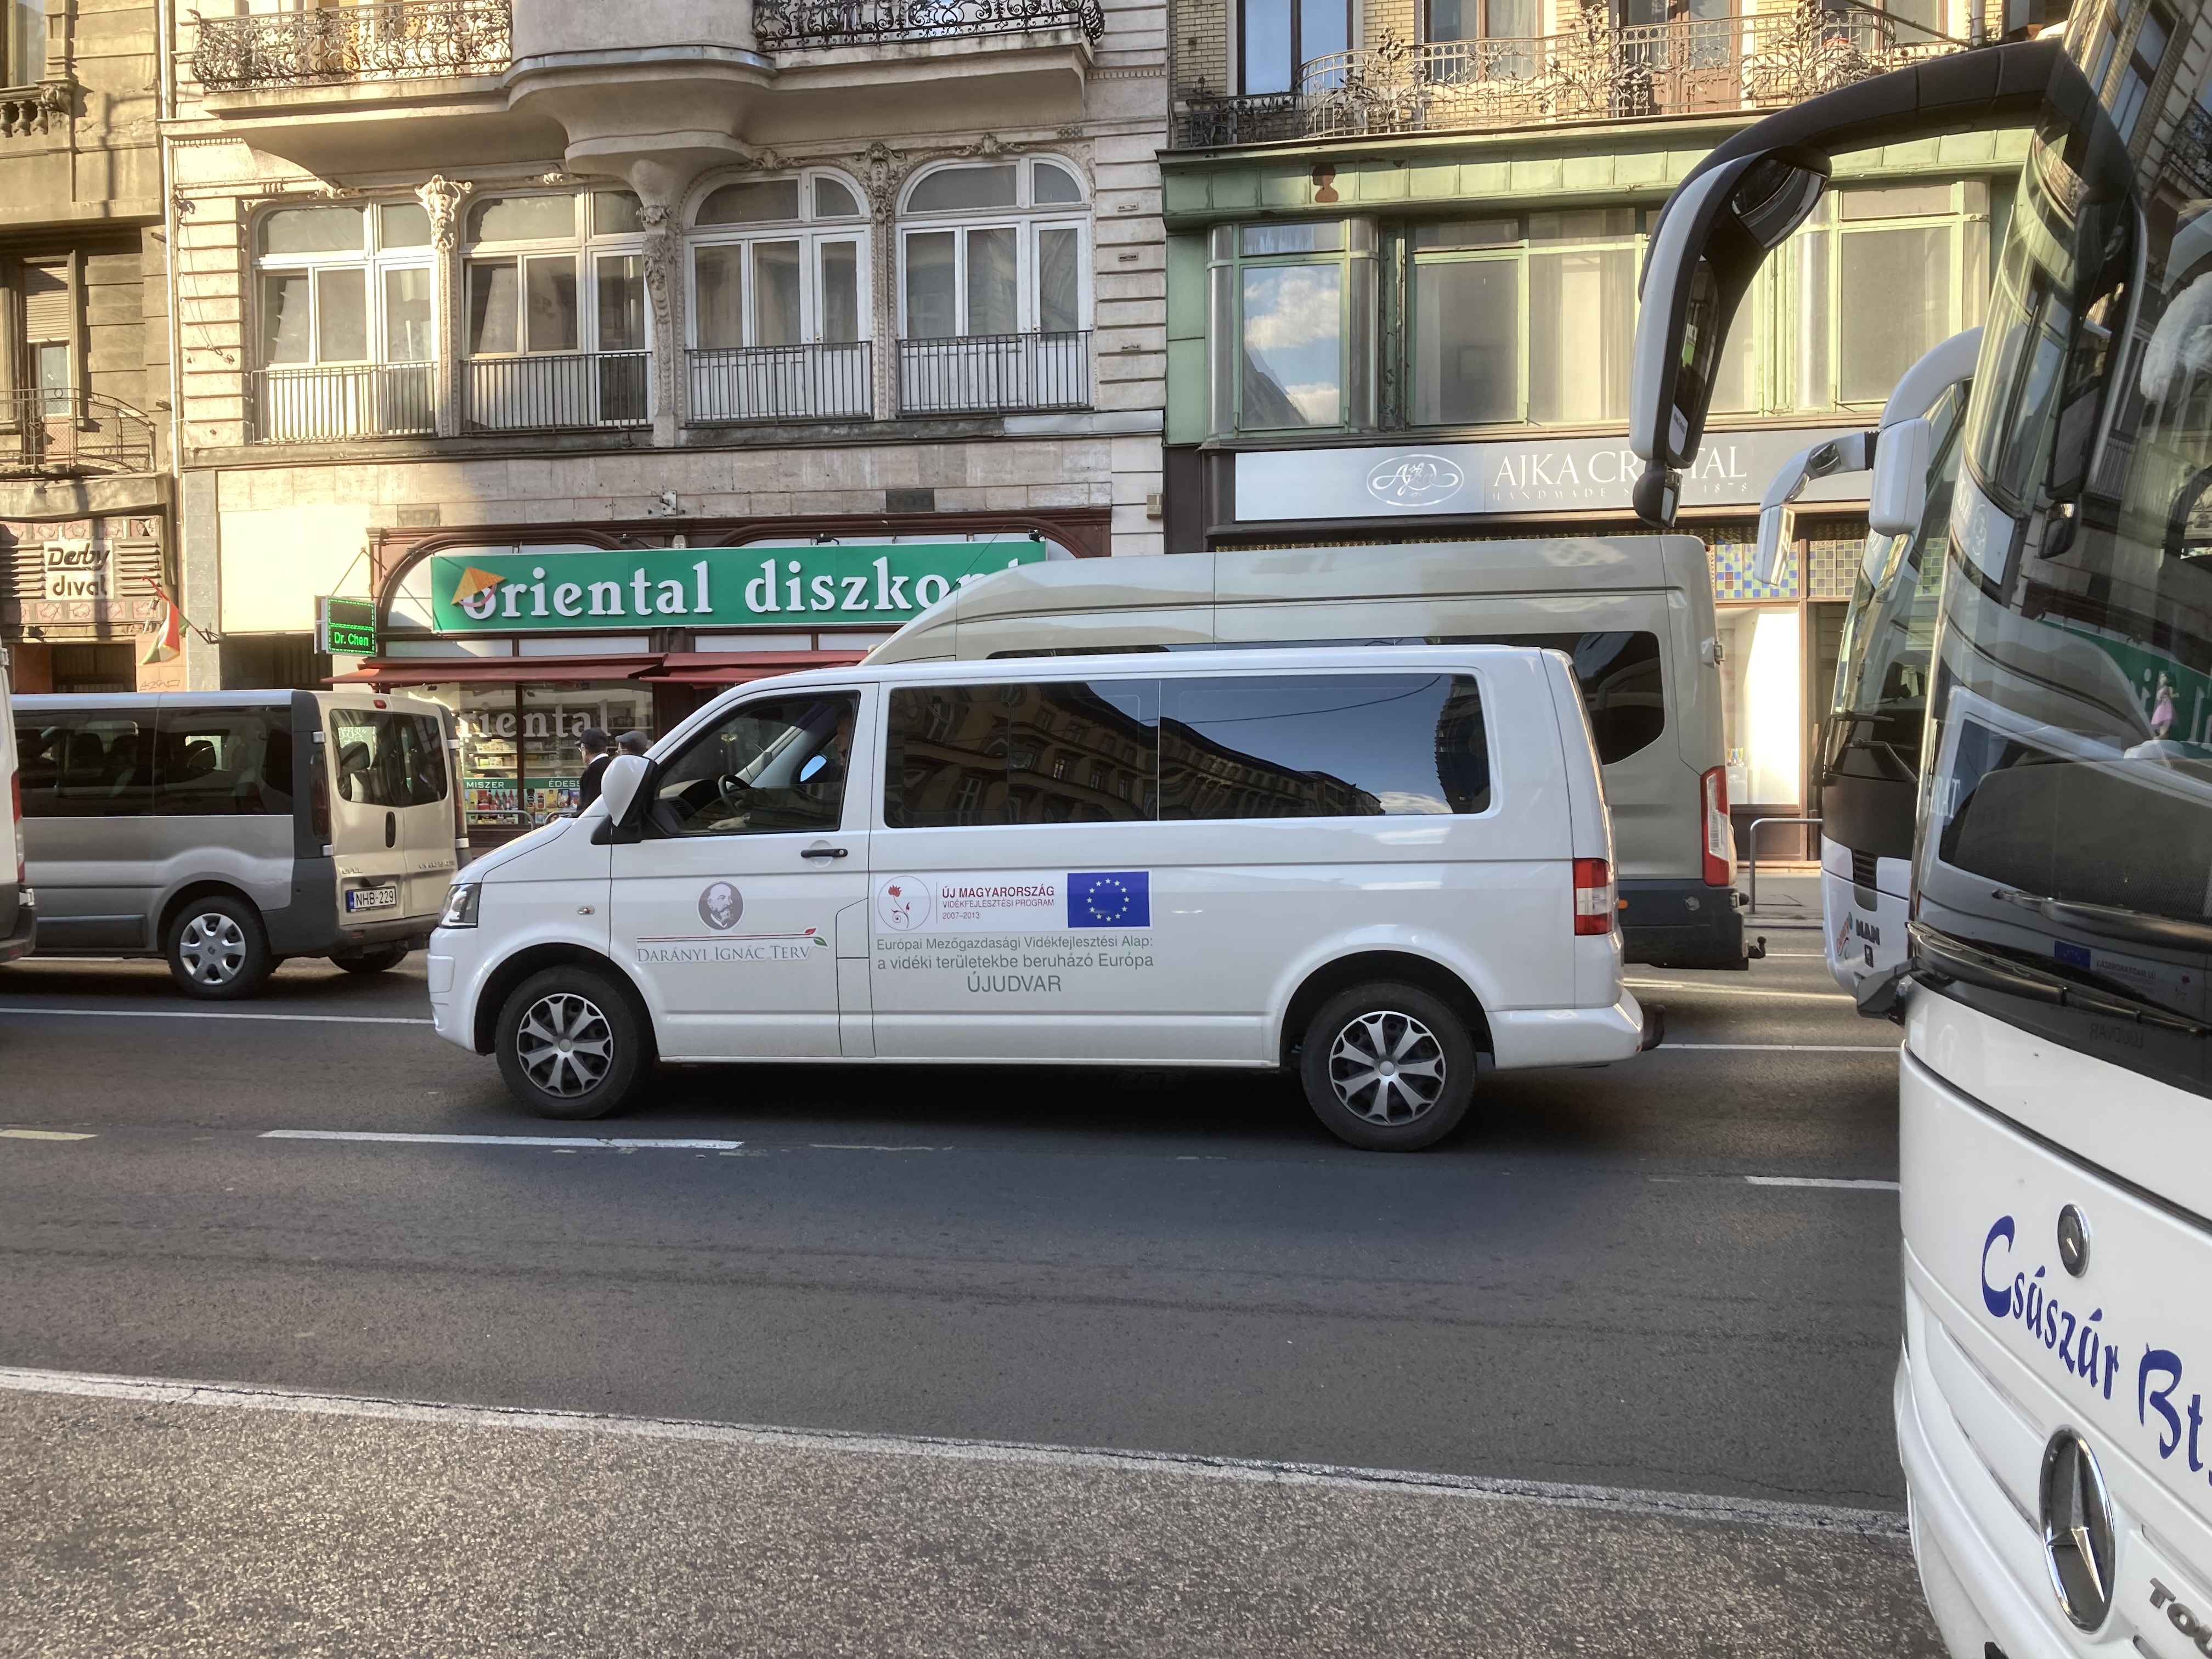 Uniós támogatásból kapott busszal is mentek a Békemenetre, hogy aztán meghallgassák a brüsszelező Orbánt